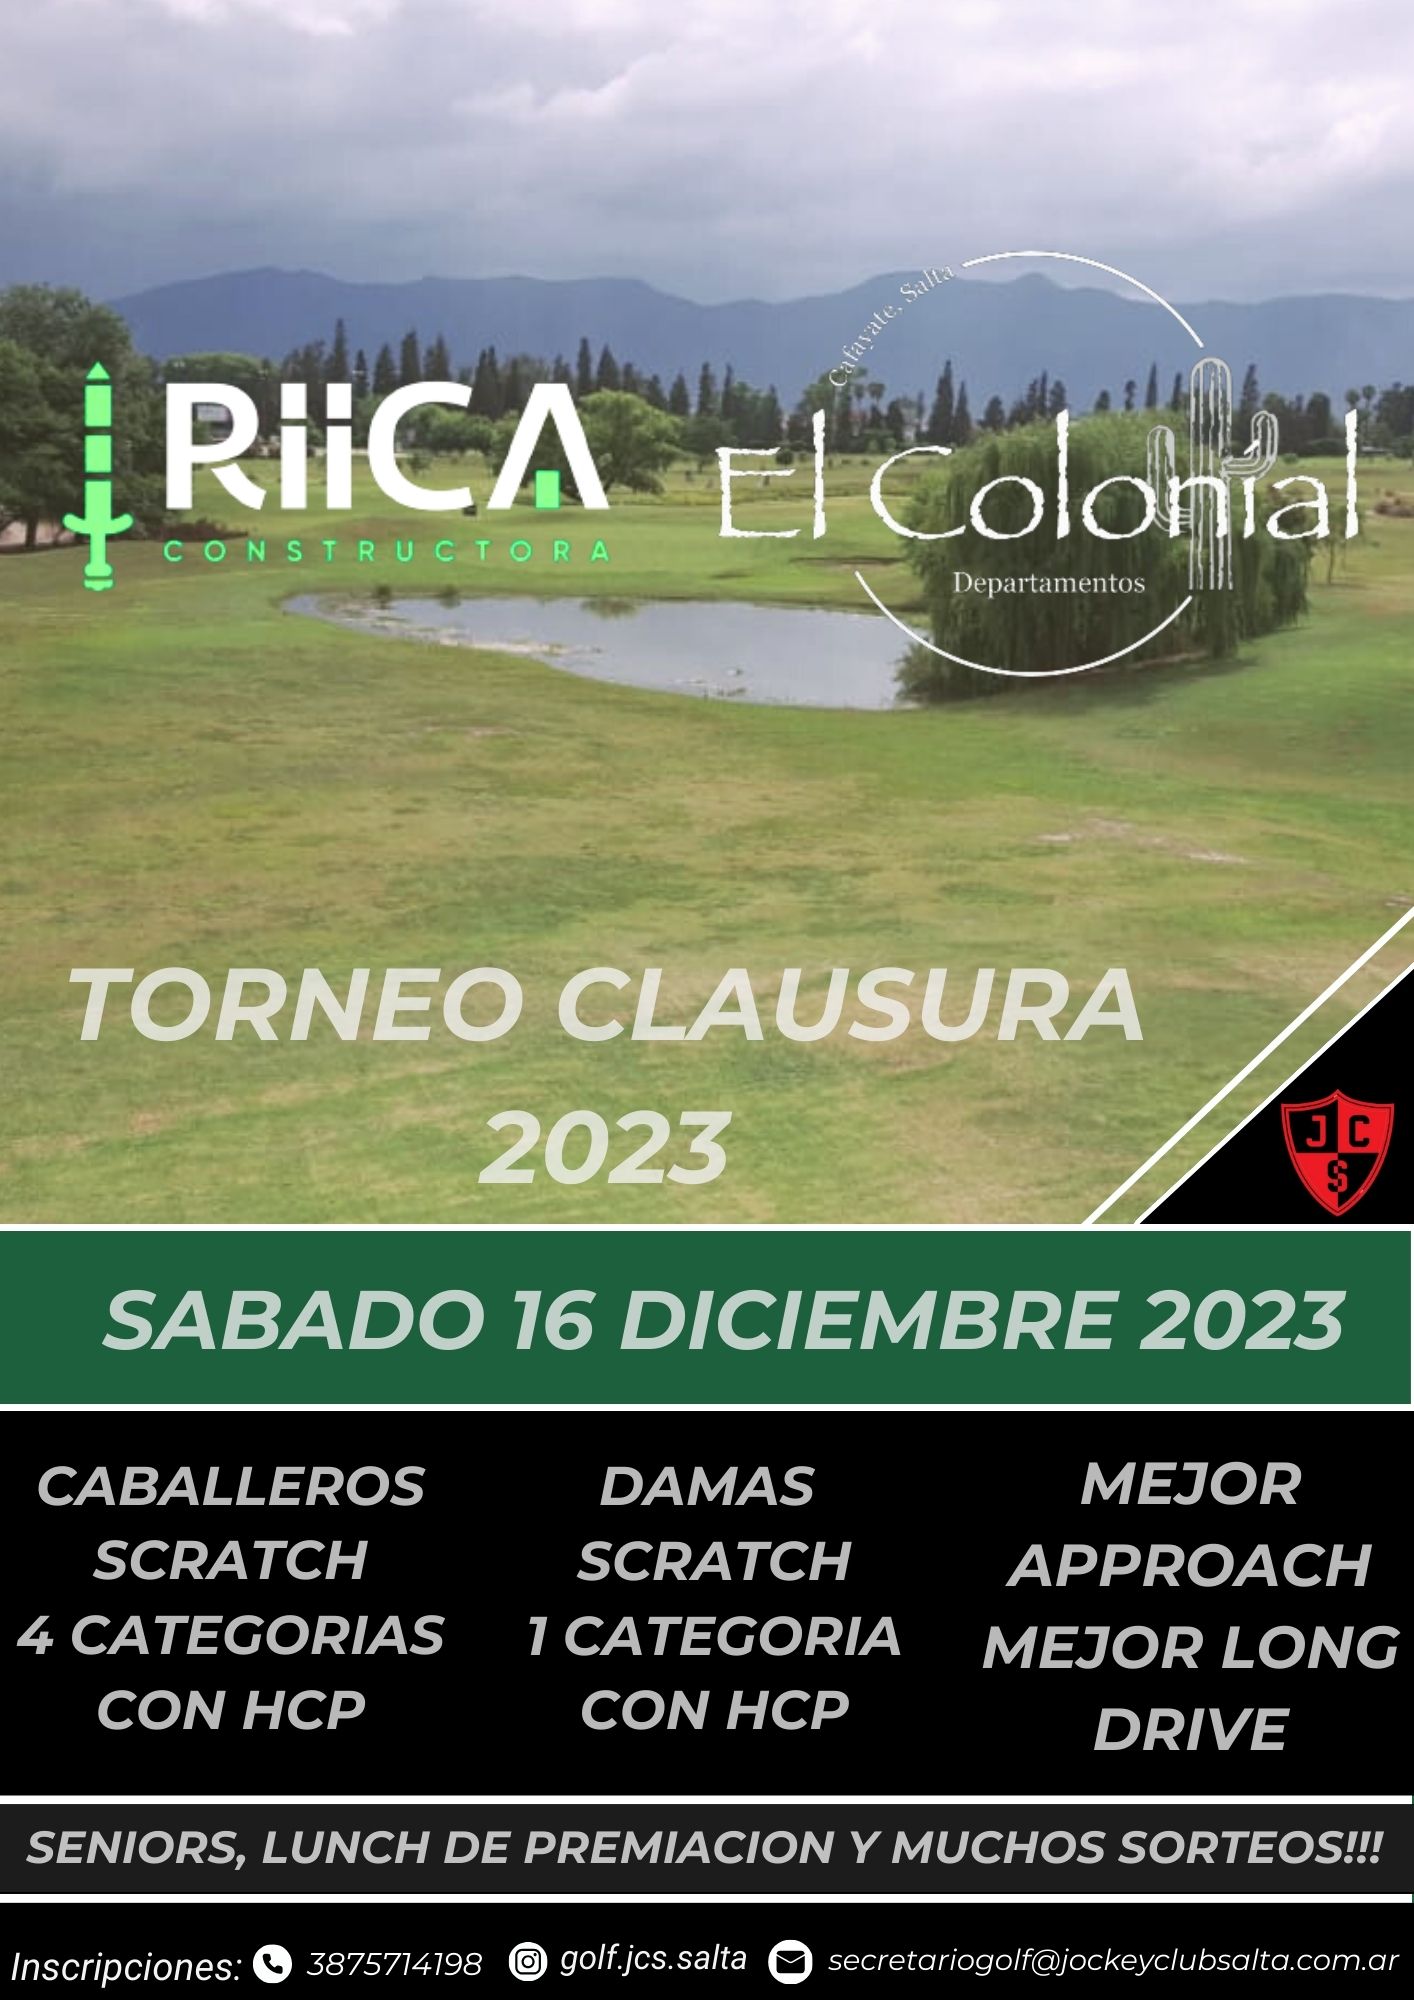 TORNEO CLAUSURA - CONSTRUCTORA RIICA - 18 HOYOS MEDALPLAY (16-12-23)